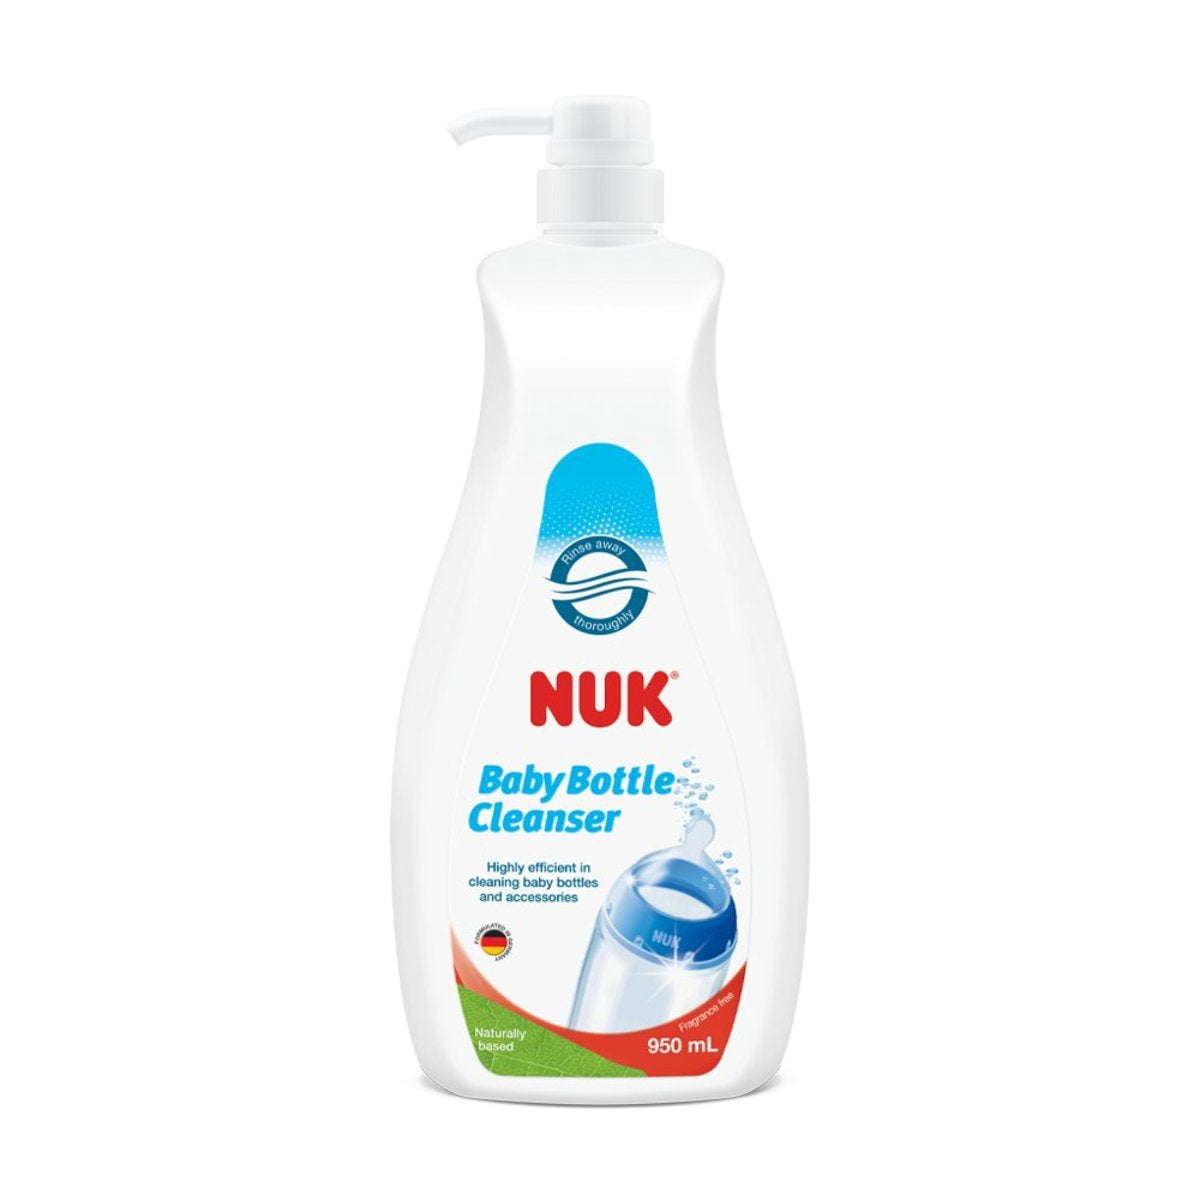 nuk-950ml-baby-bottle-cleanser-new-1